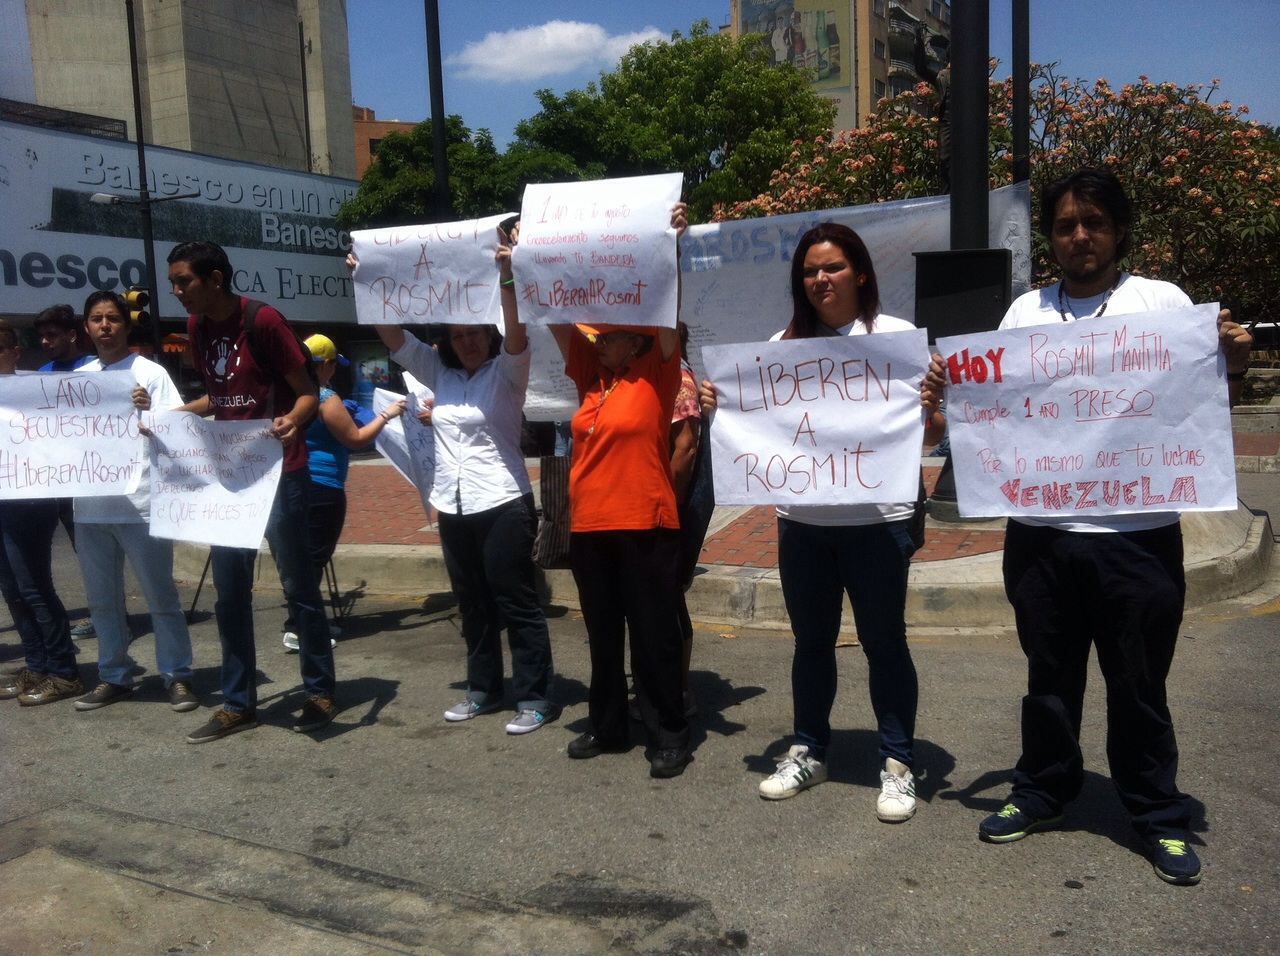 Estudiantes y defensores se concentraron en apoyo al joven detenido Rosmit Mantilla